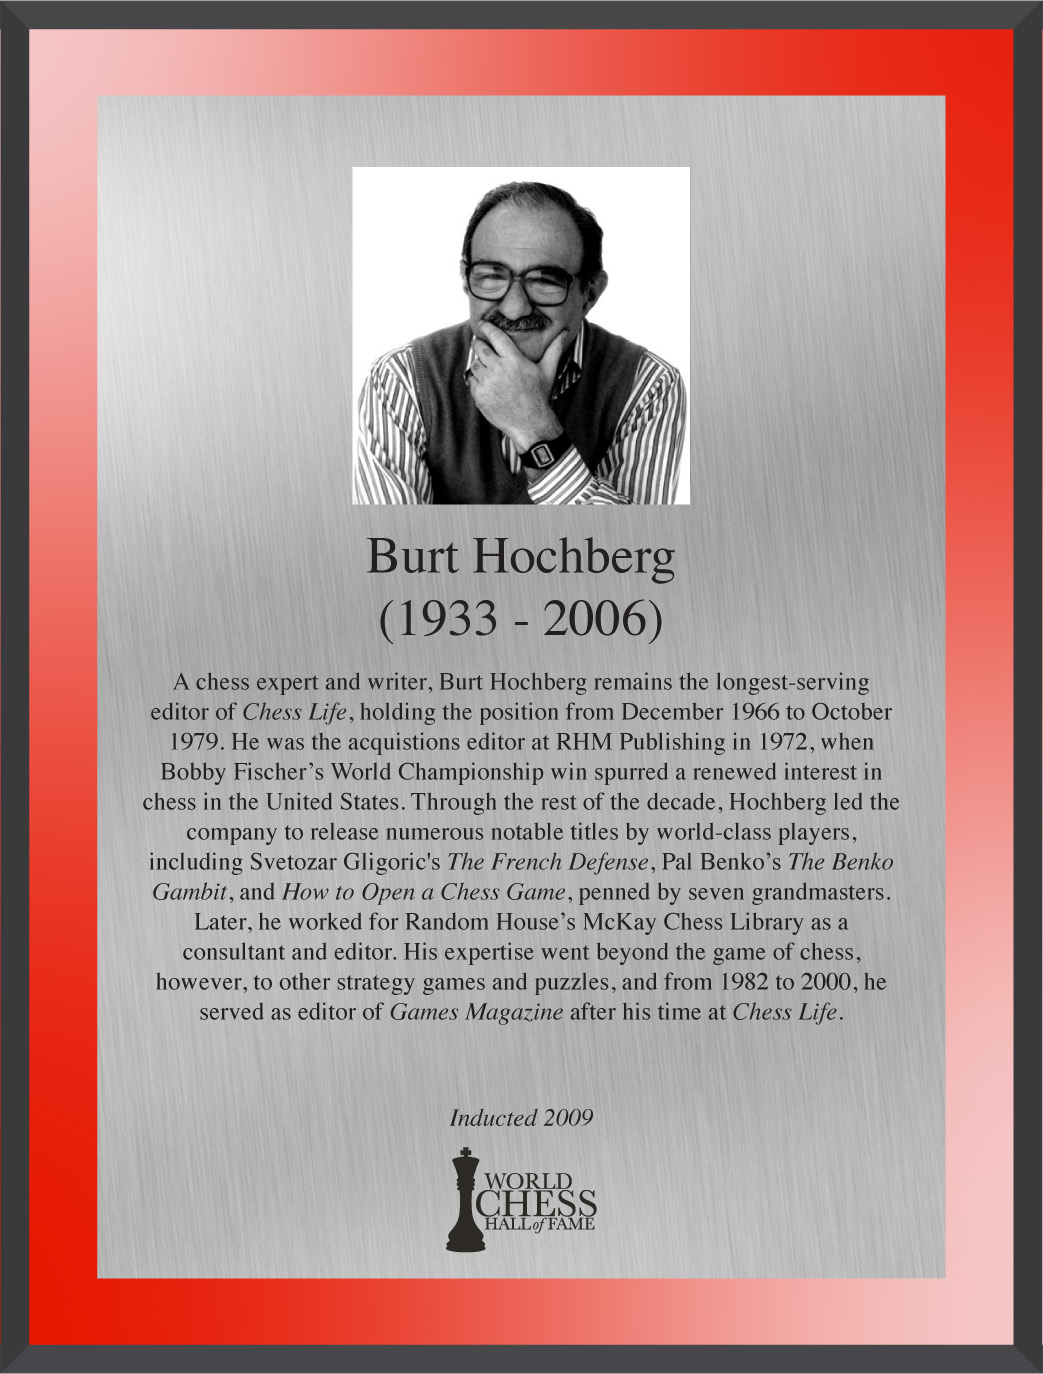 Burt Hochberg